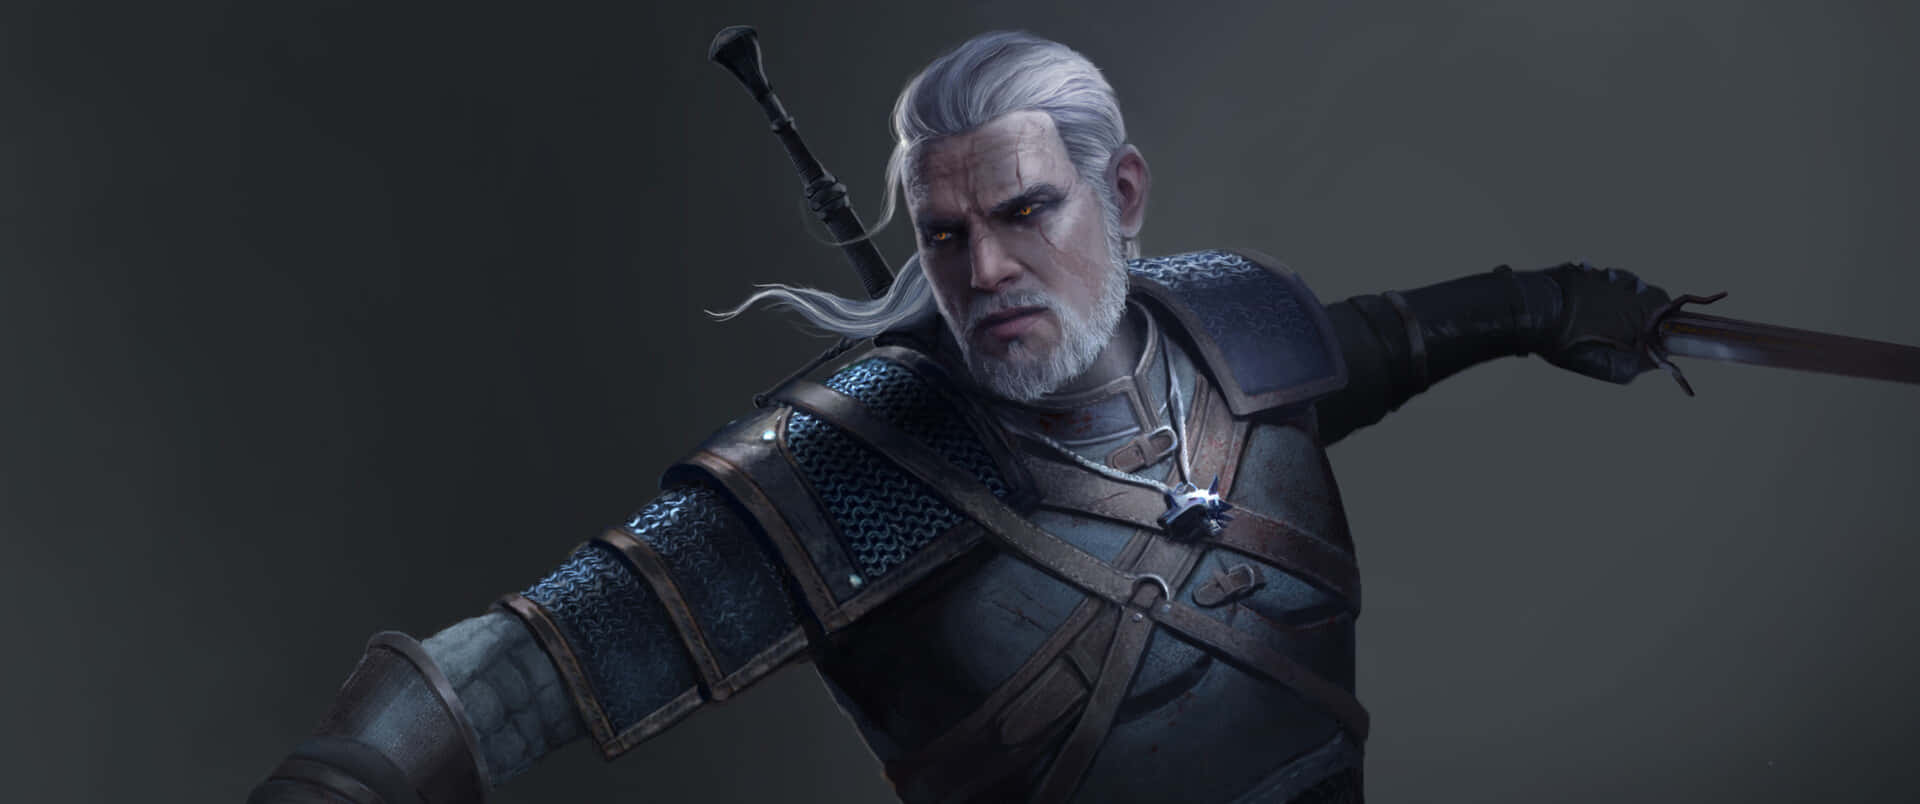 Geraltvon Riva, Der Hexer-protagonist Der Beliebten Videospielreihe The Witcher, In All Seiner Pracht. Wallpaper